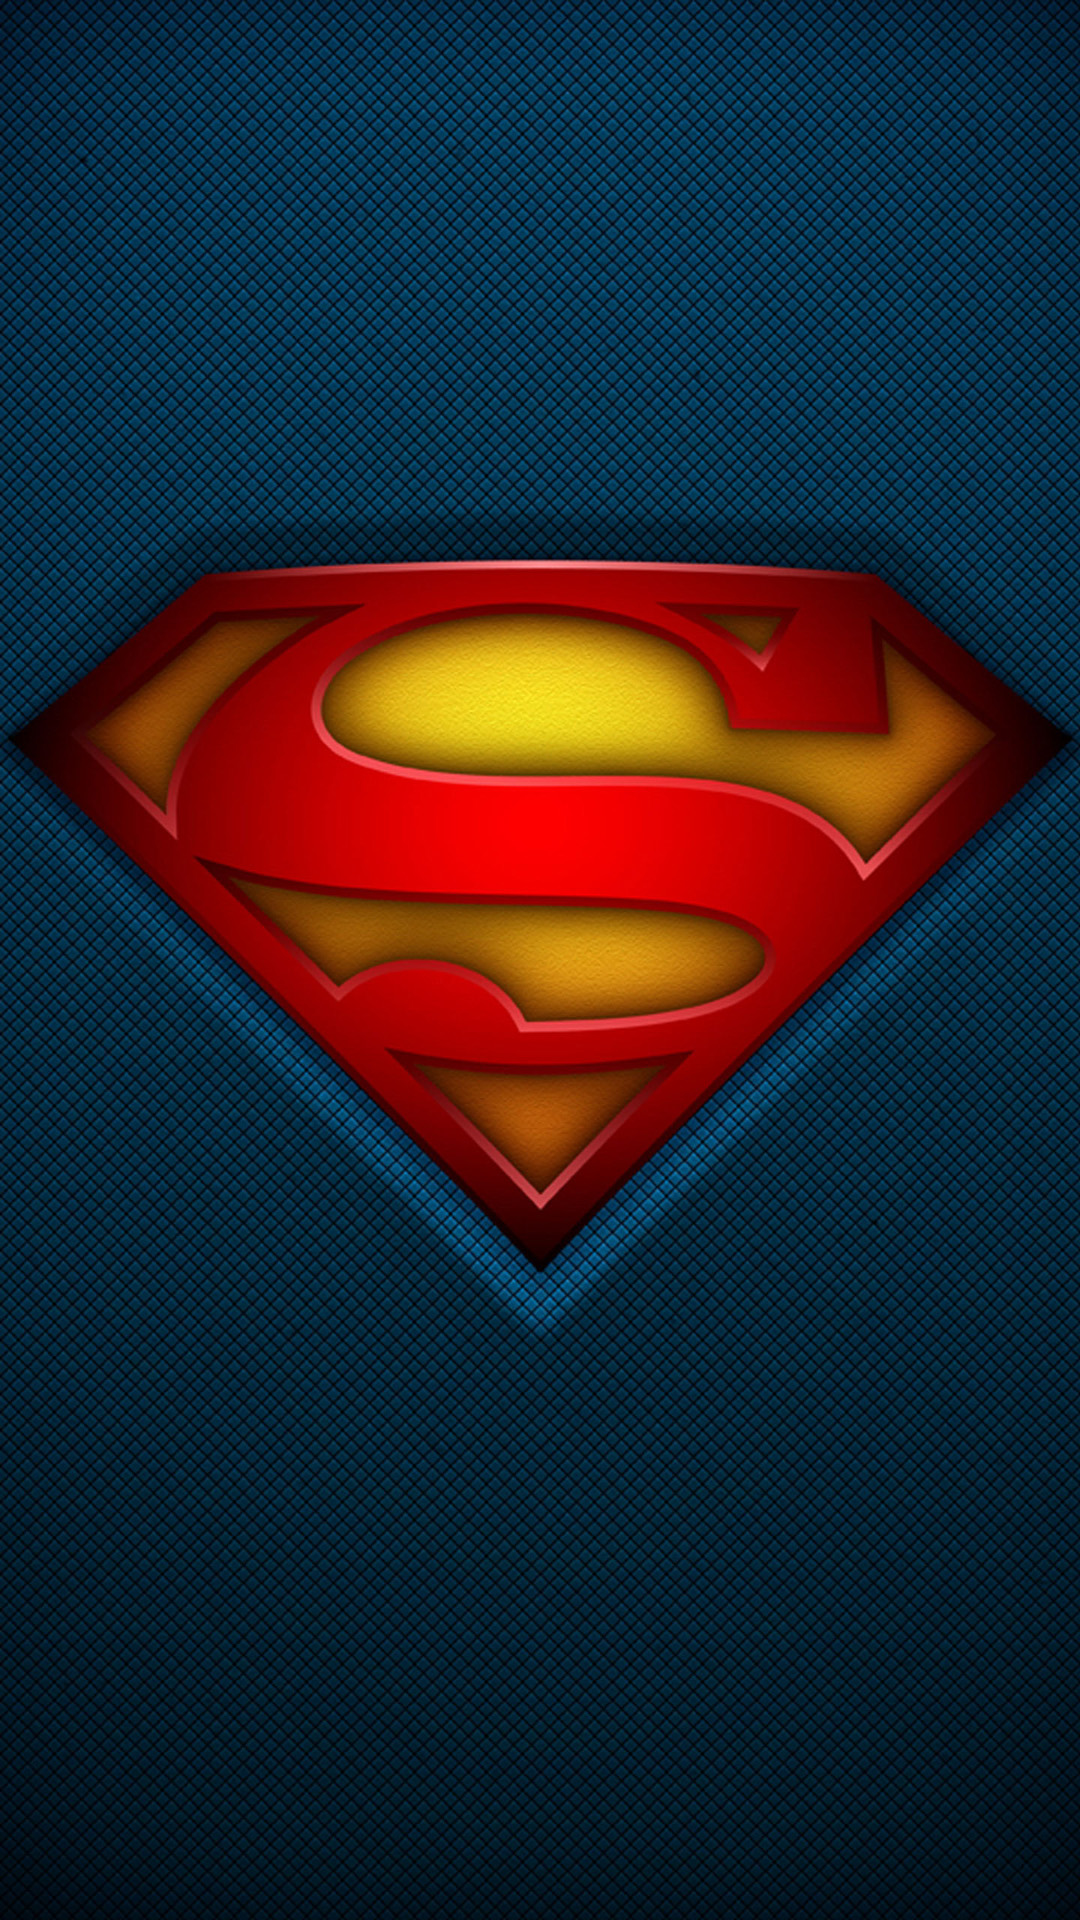 carta da parati telefono superman,superuomo,supereroe,rosso,personaggio fittizio,lega della giustizia